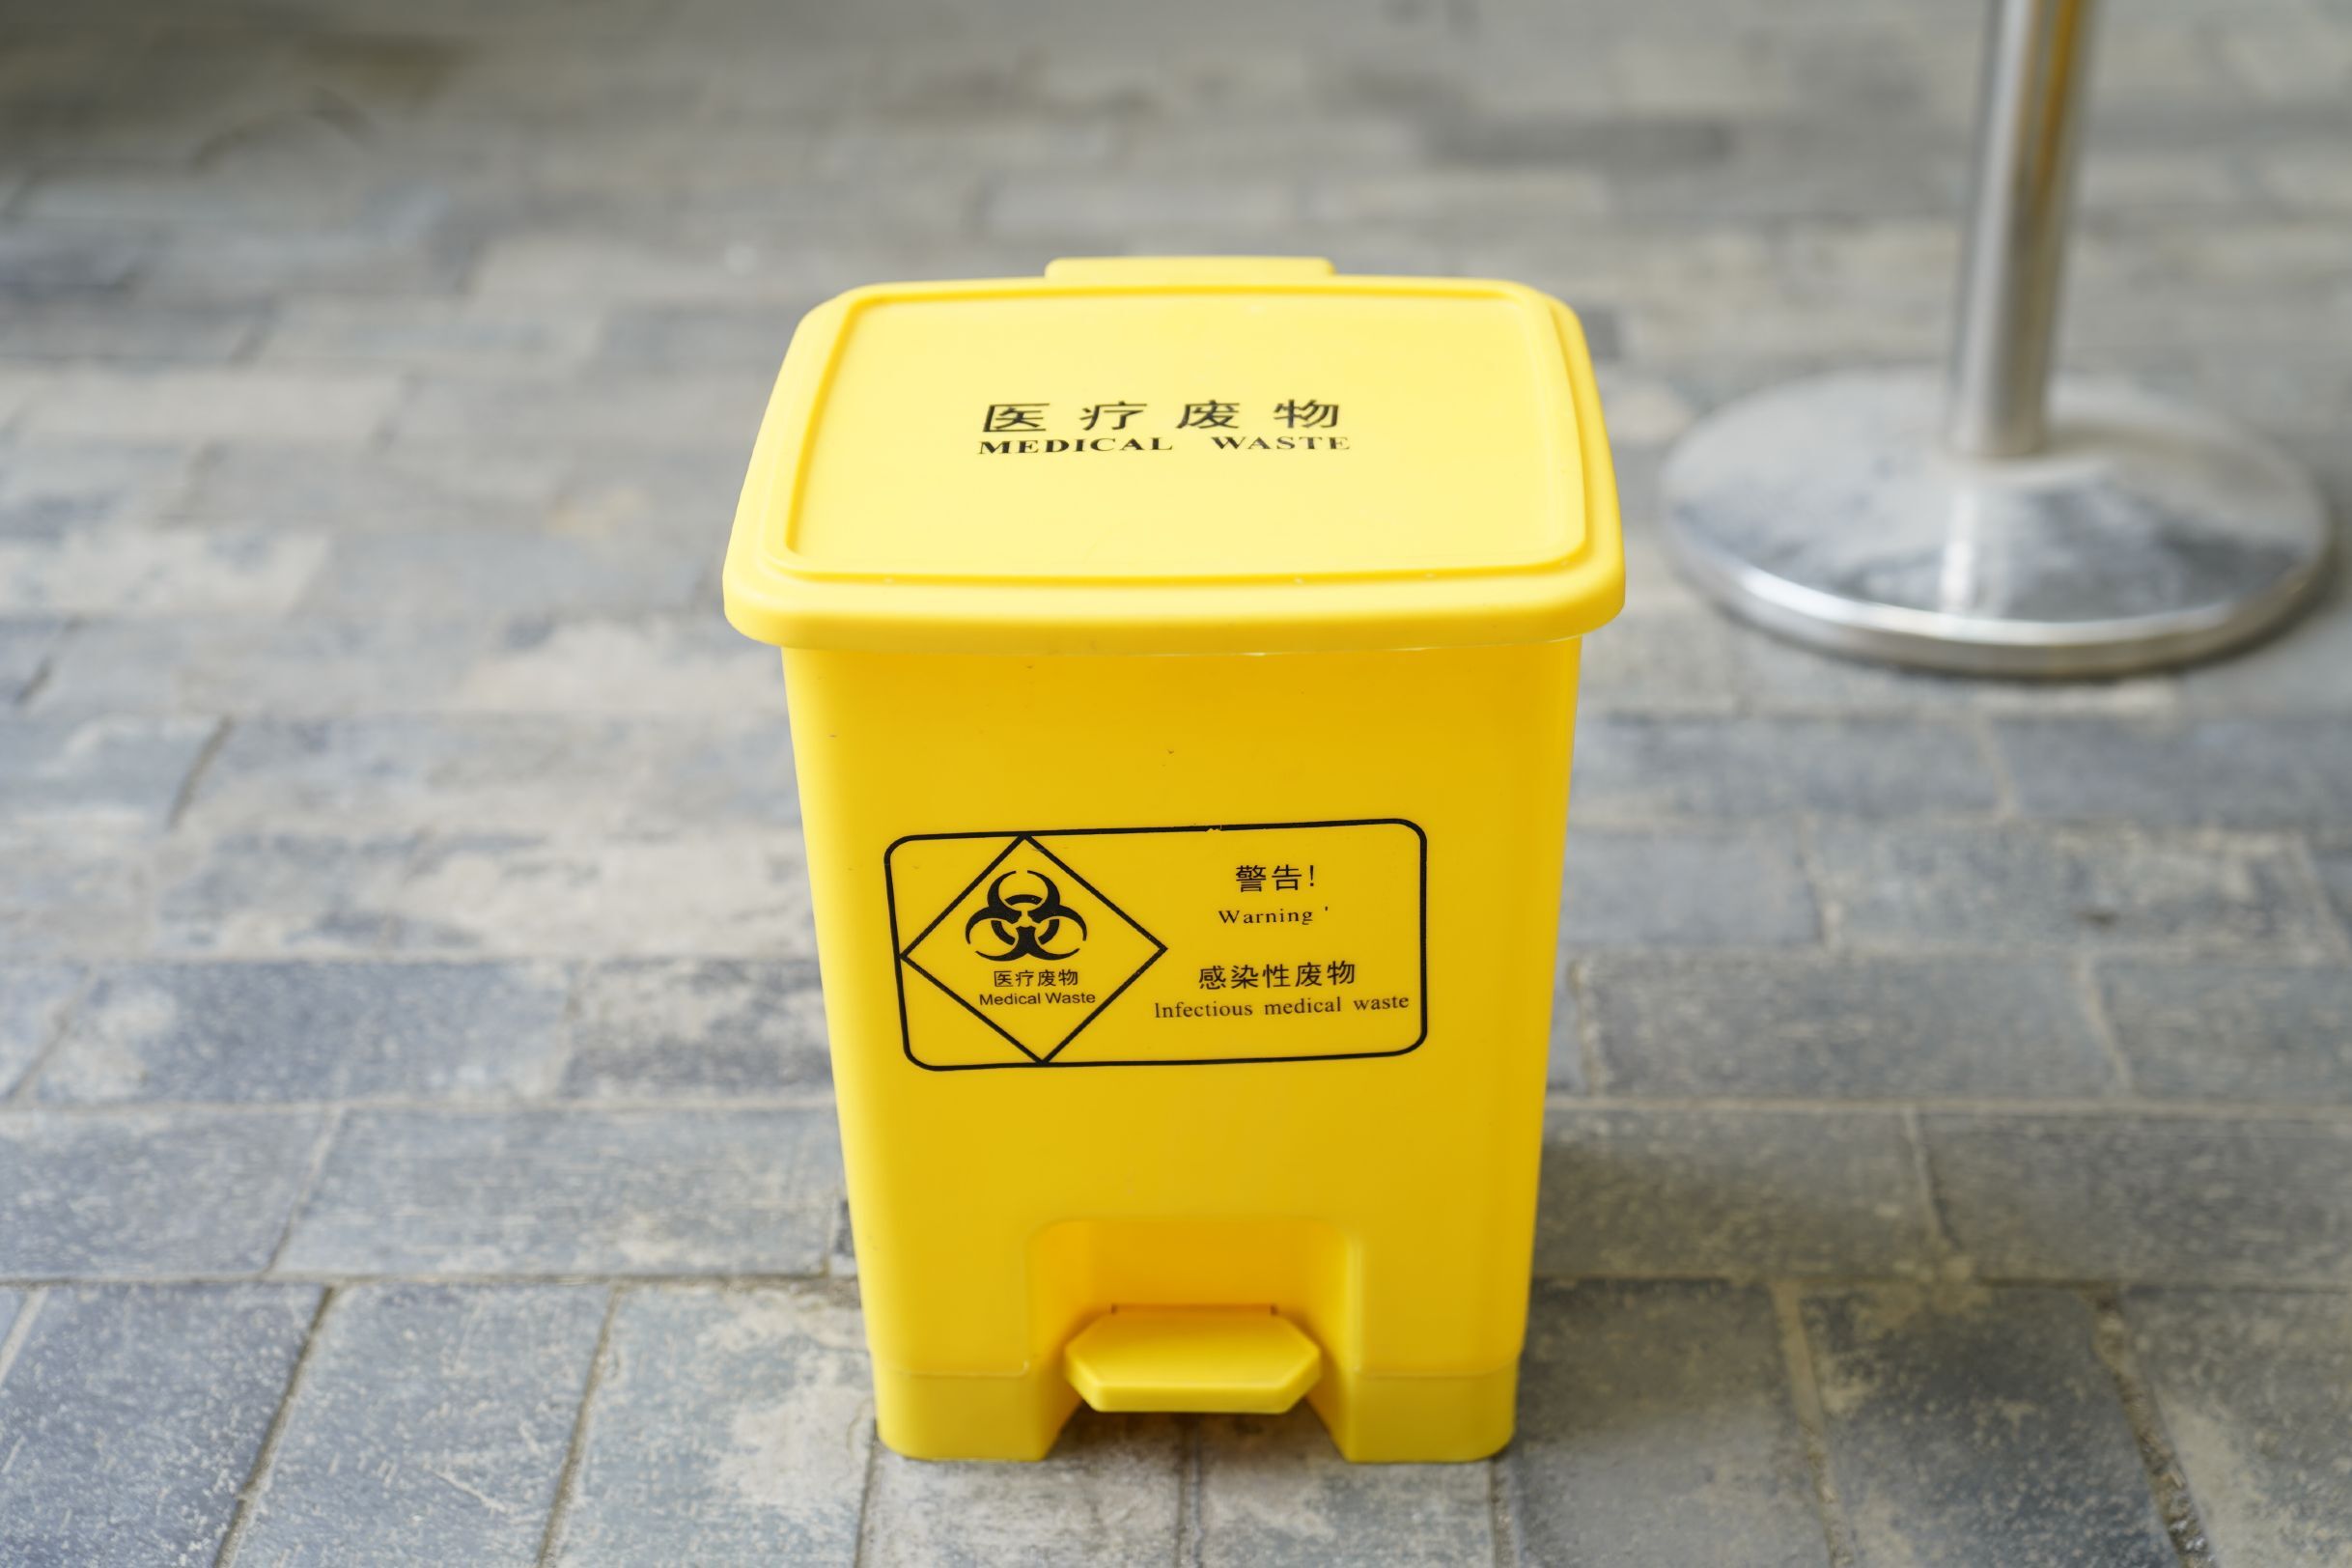 垃圾筒 福州黄色垃圾桶电话